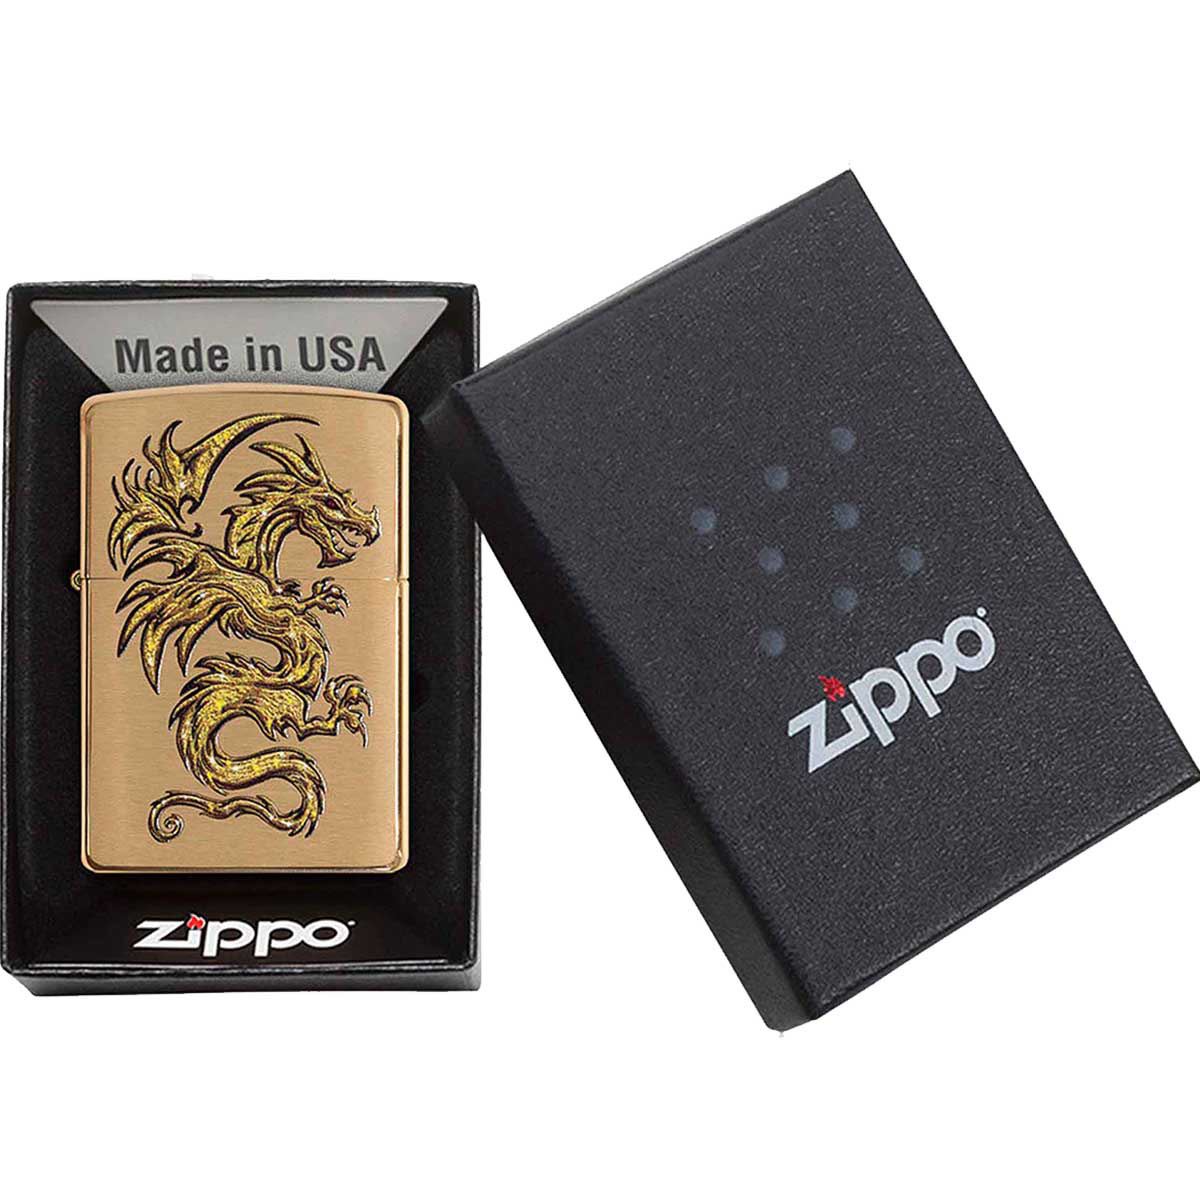 Encendedor Zippo Color Dorado Diseño Dragón